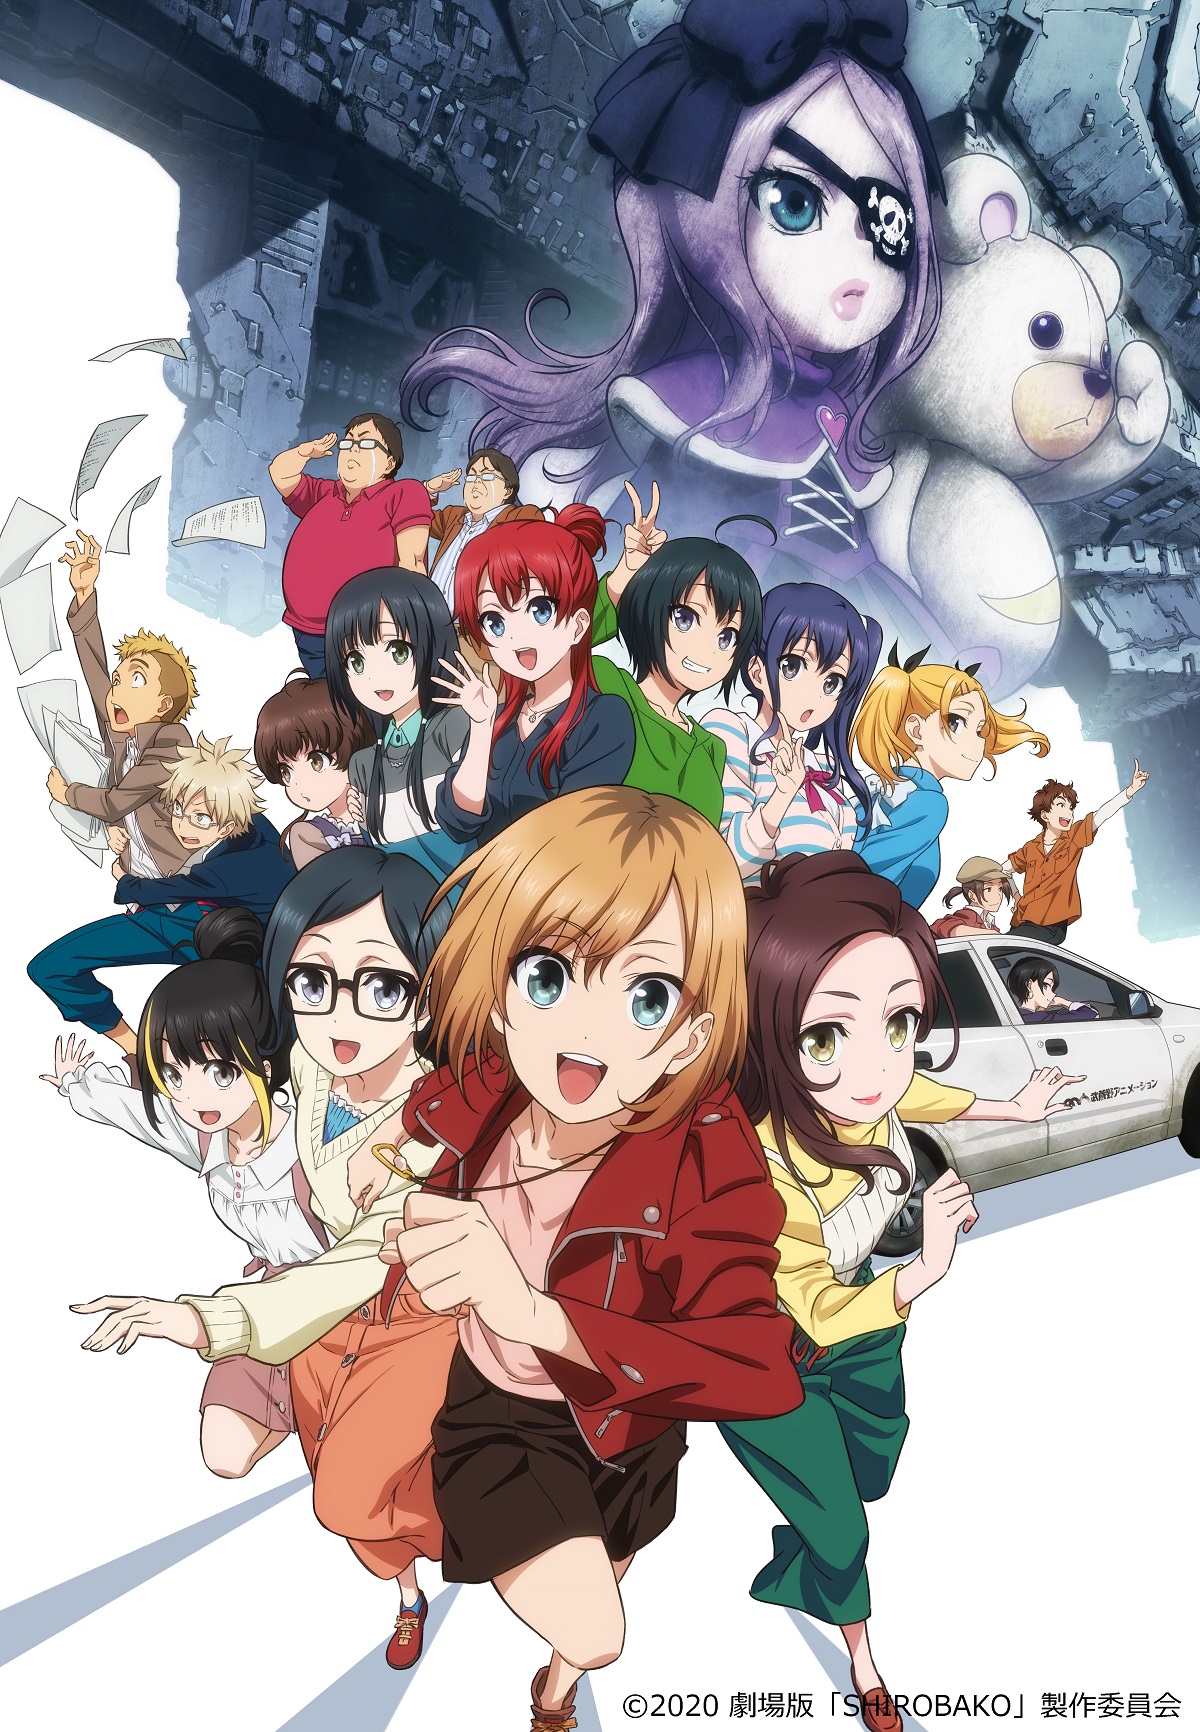 劇場版shirobako Blu Ray Dvdが21年1月8日 金 発売決定 株式会社ハピネットのプレスリリース